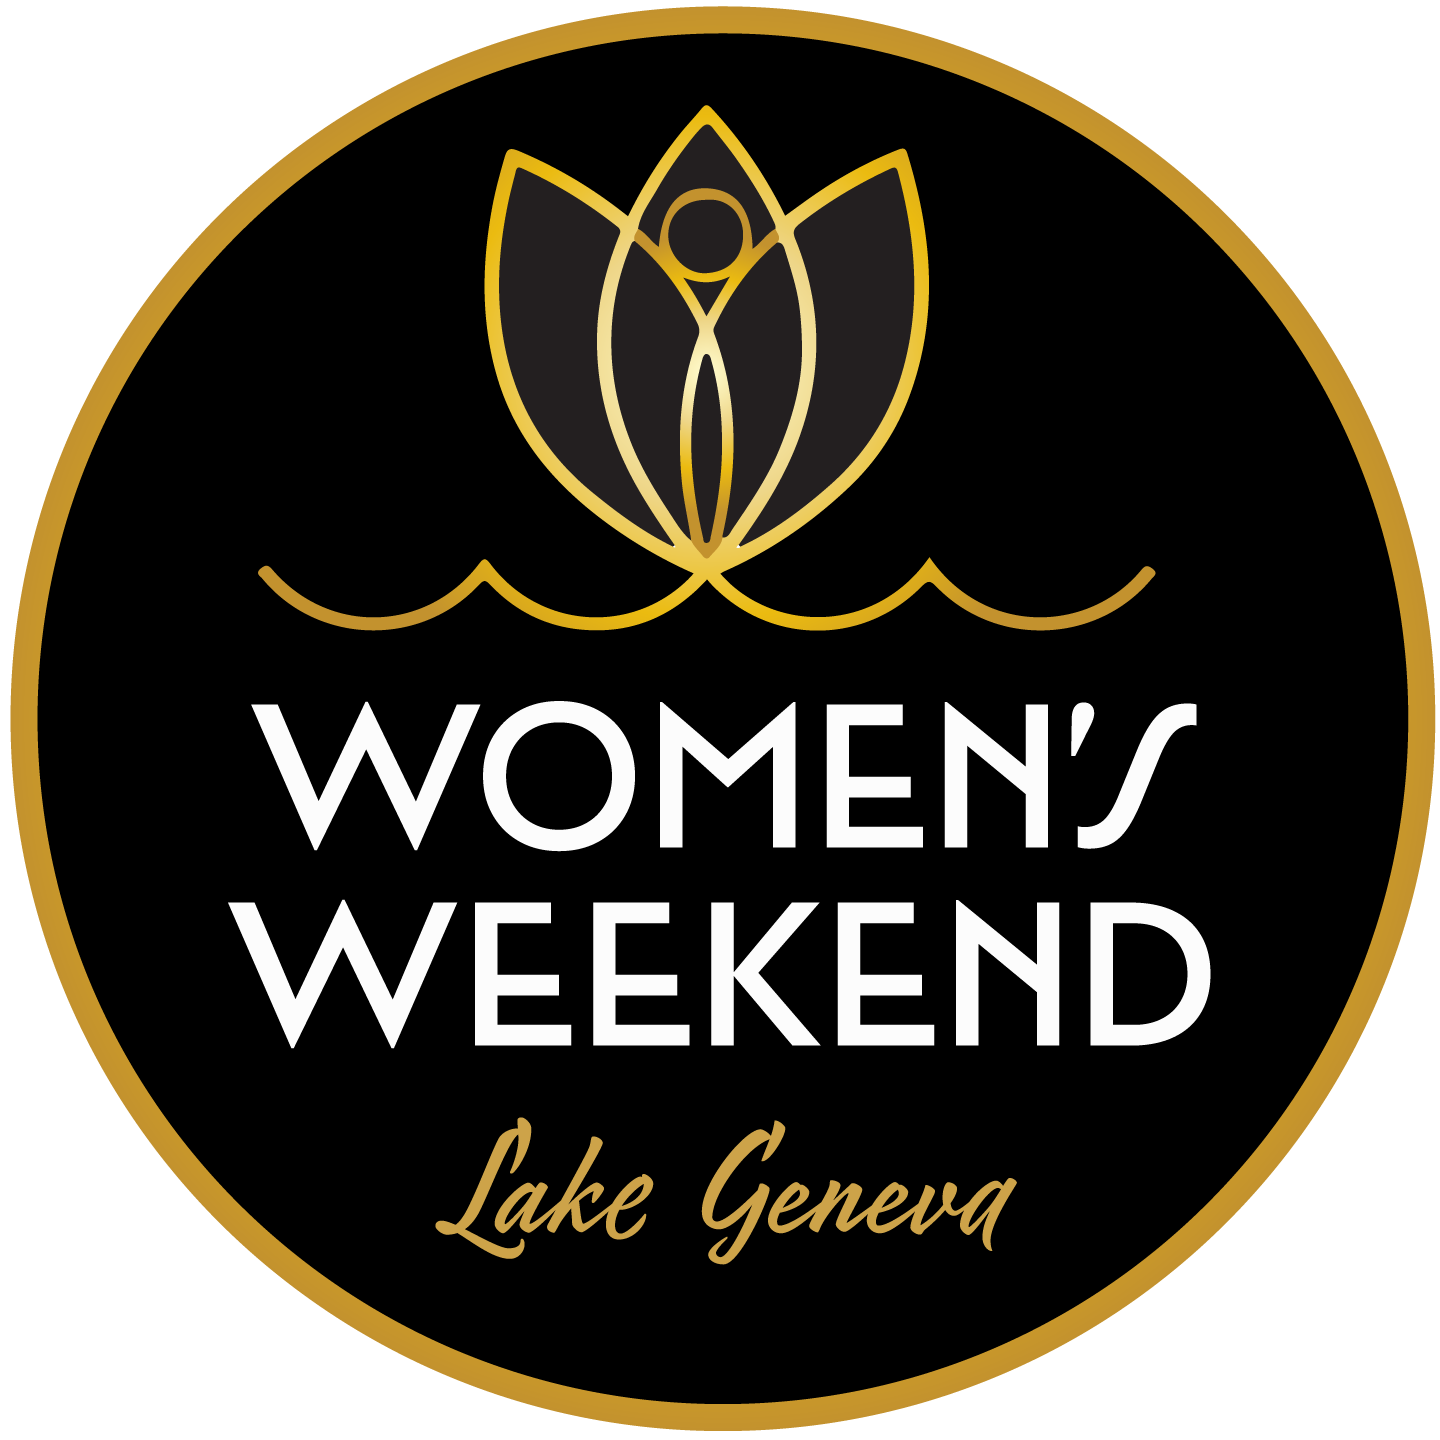 Lake Geneva Women's Weekend